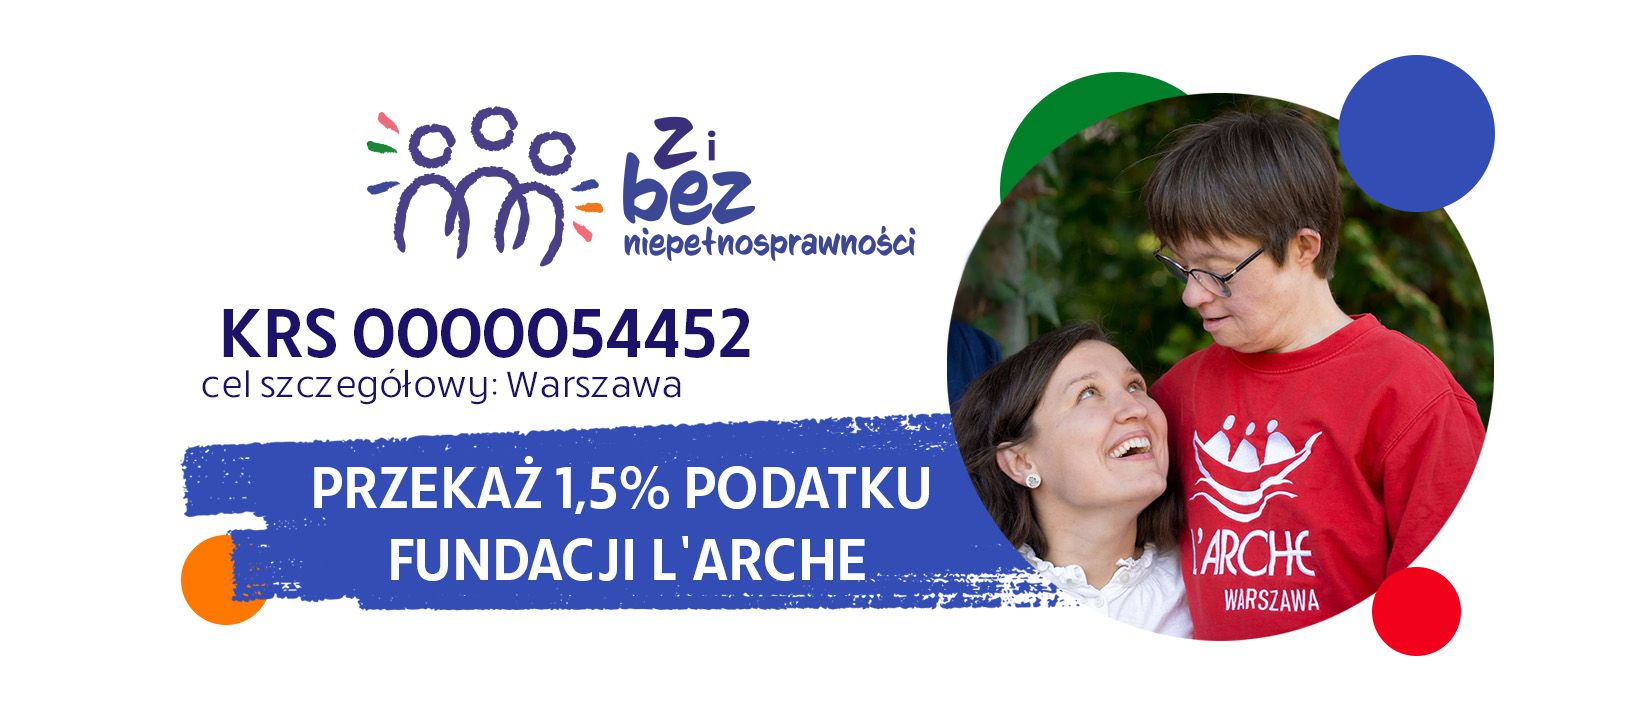 Przekaż 1,5% Fundacji L'Arche KRS: 0000054452 Cel szczegółowy: Warszawa